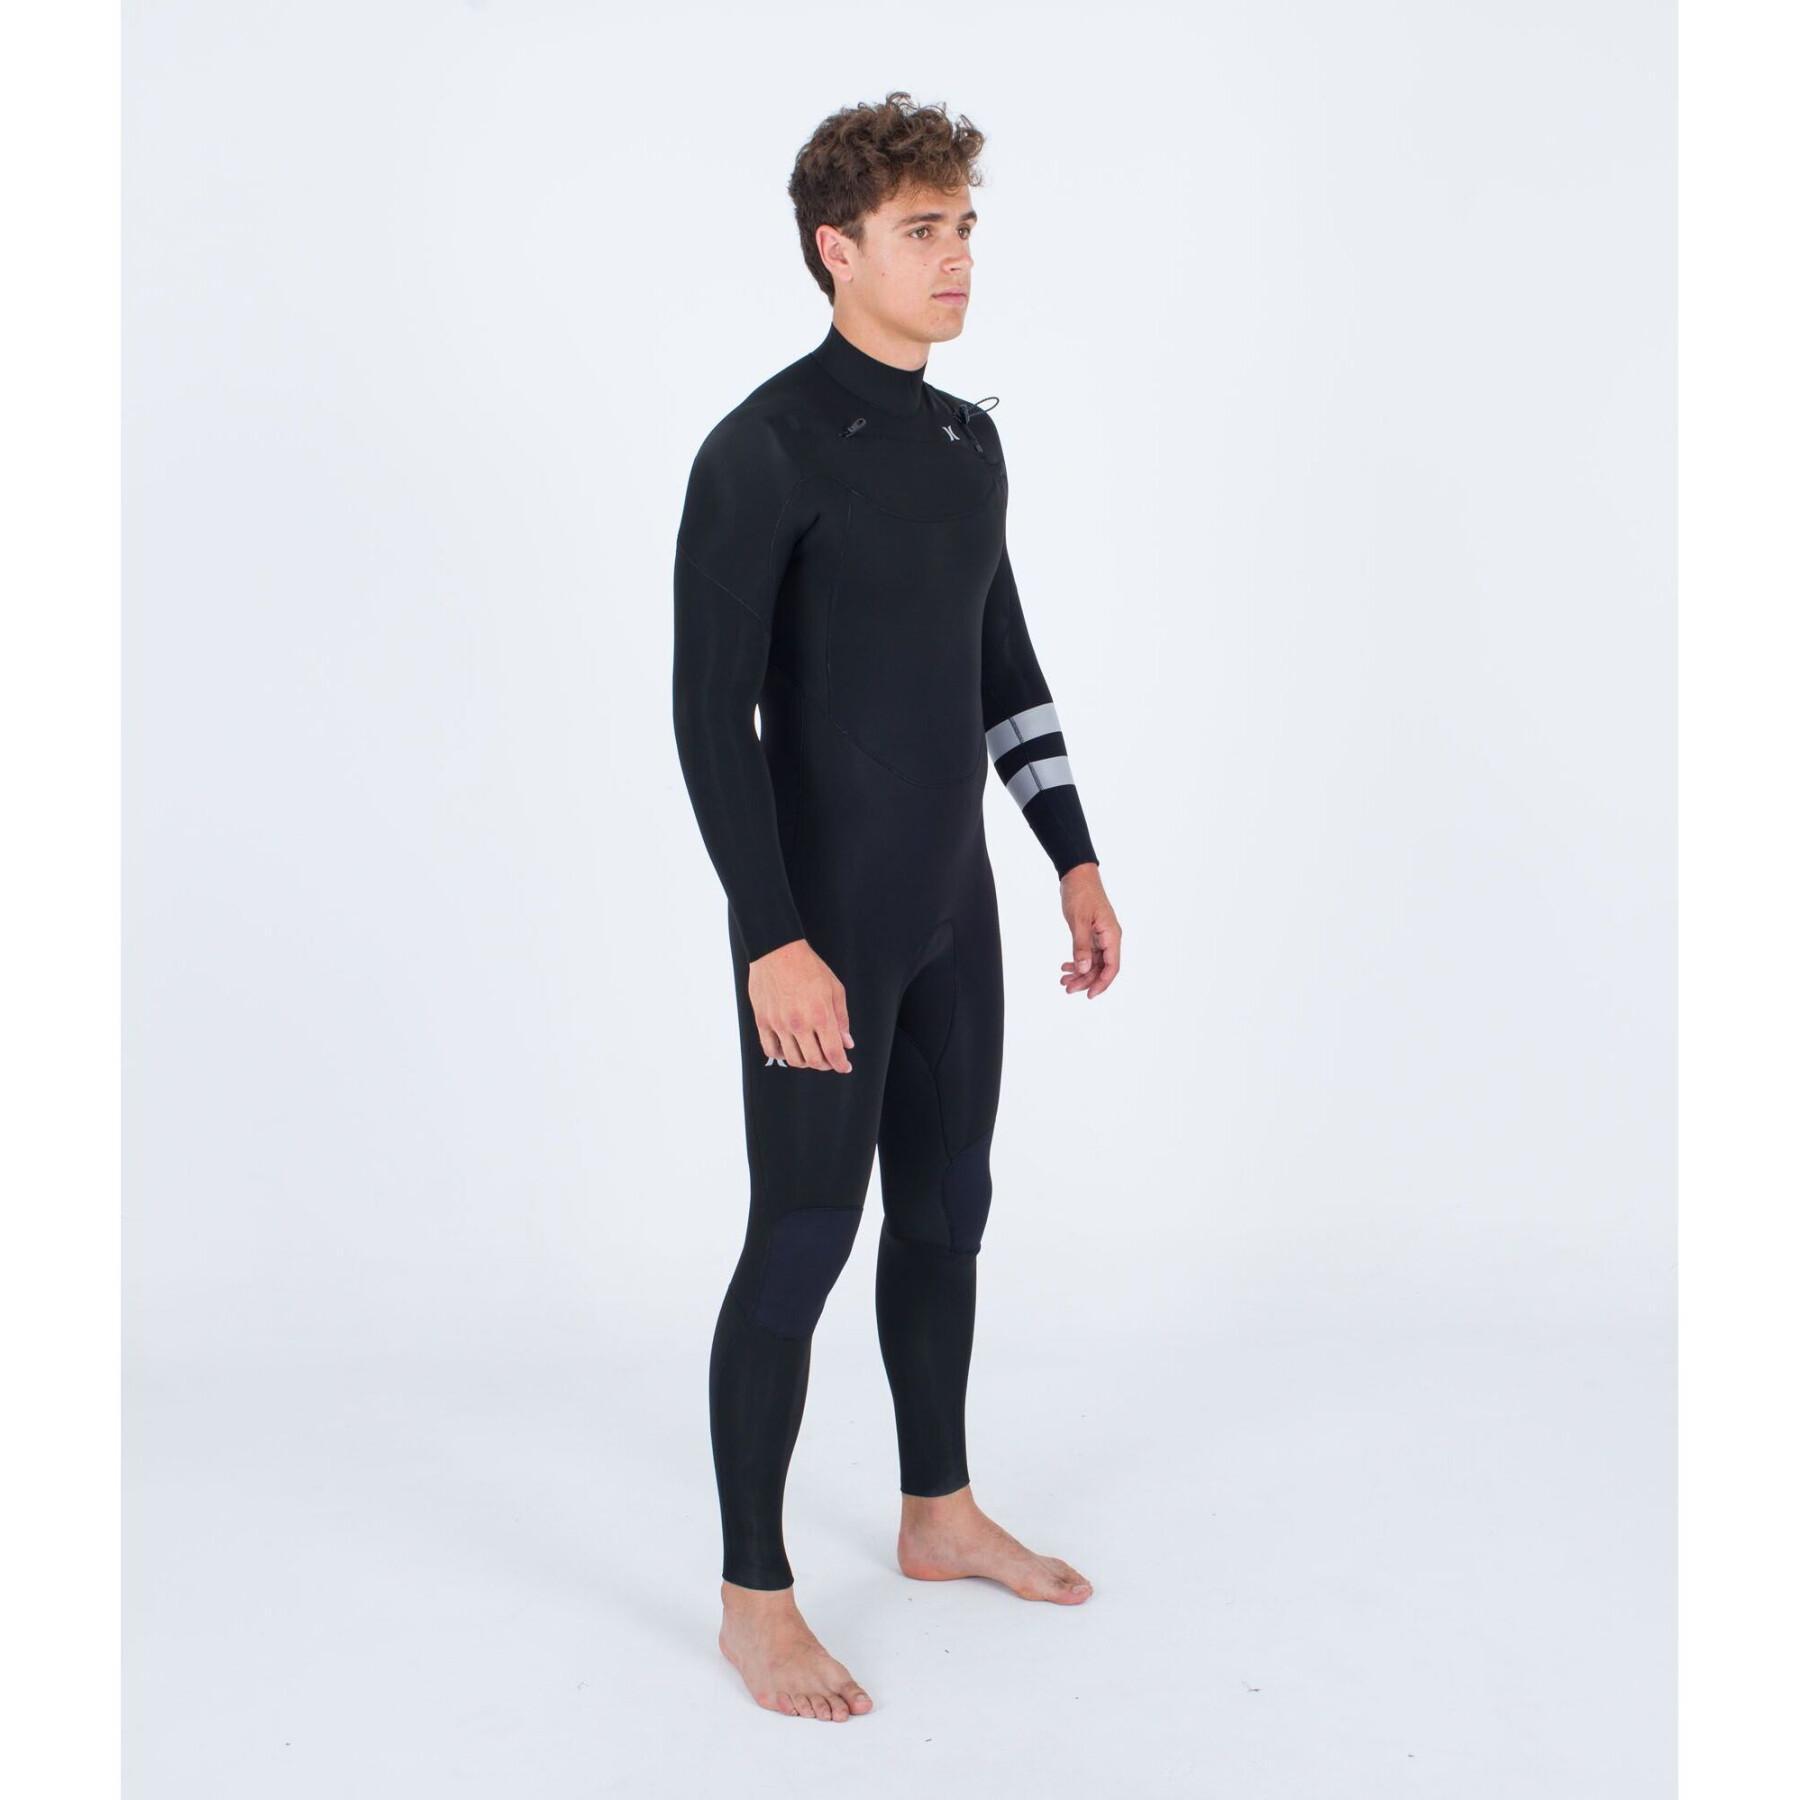 Surf suit Hurley Advant 3/2mm